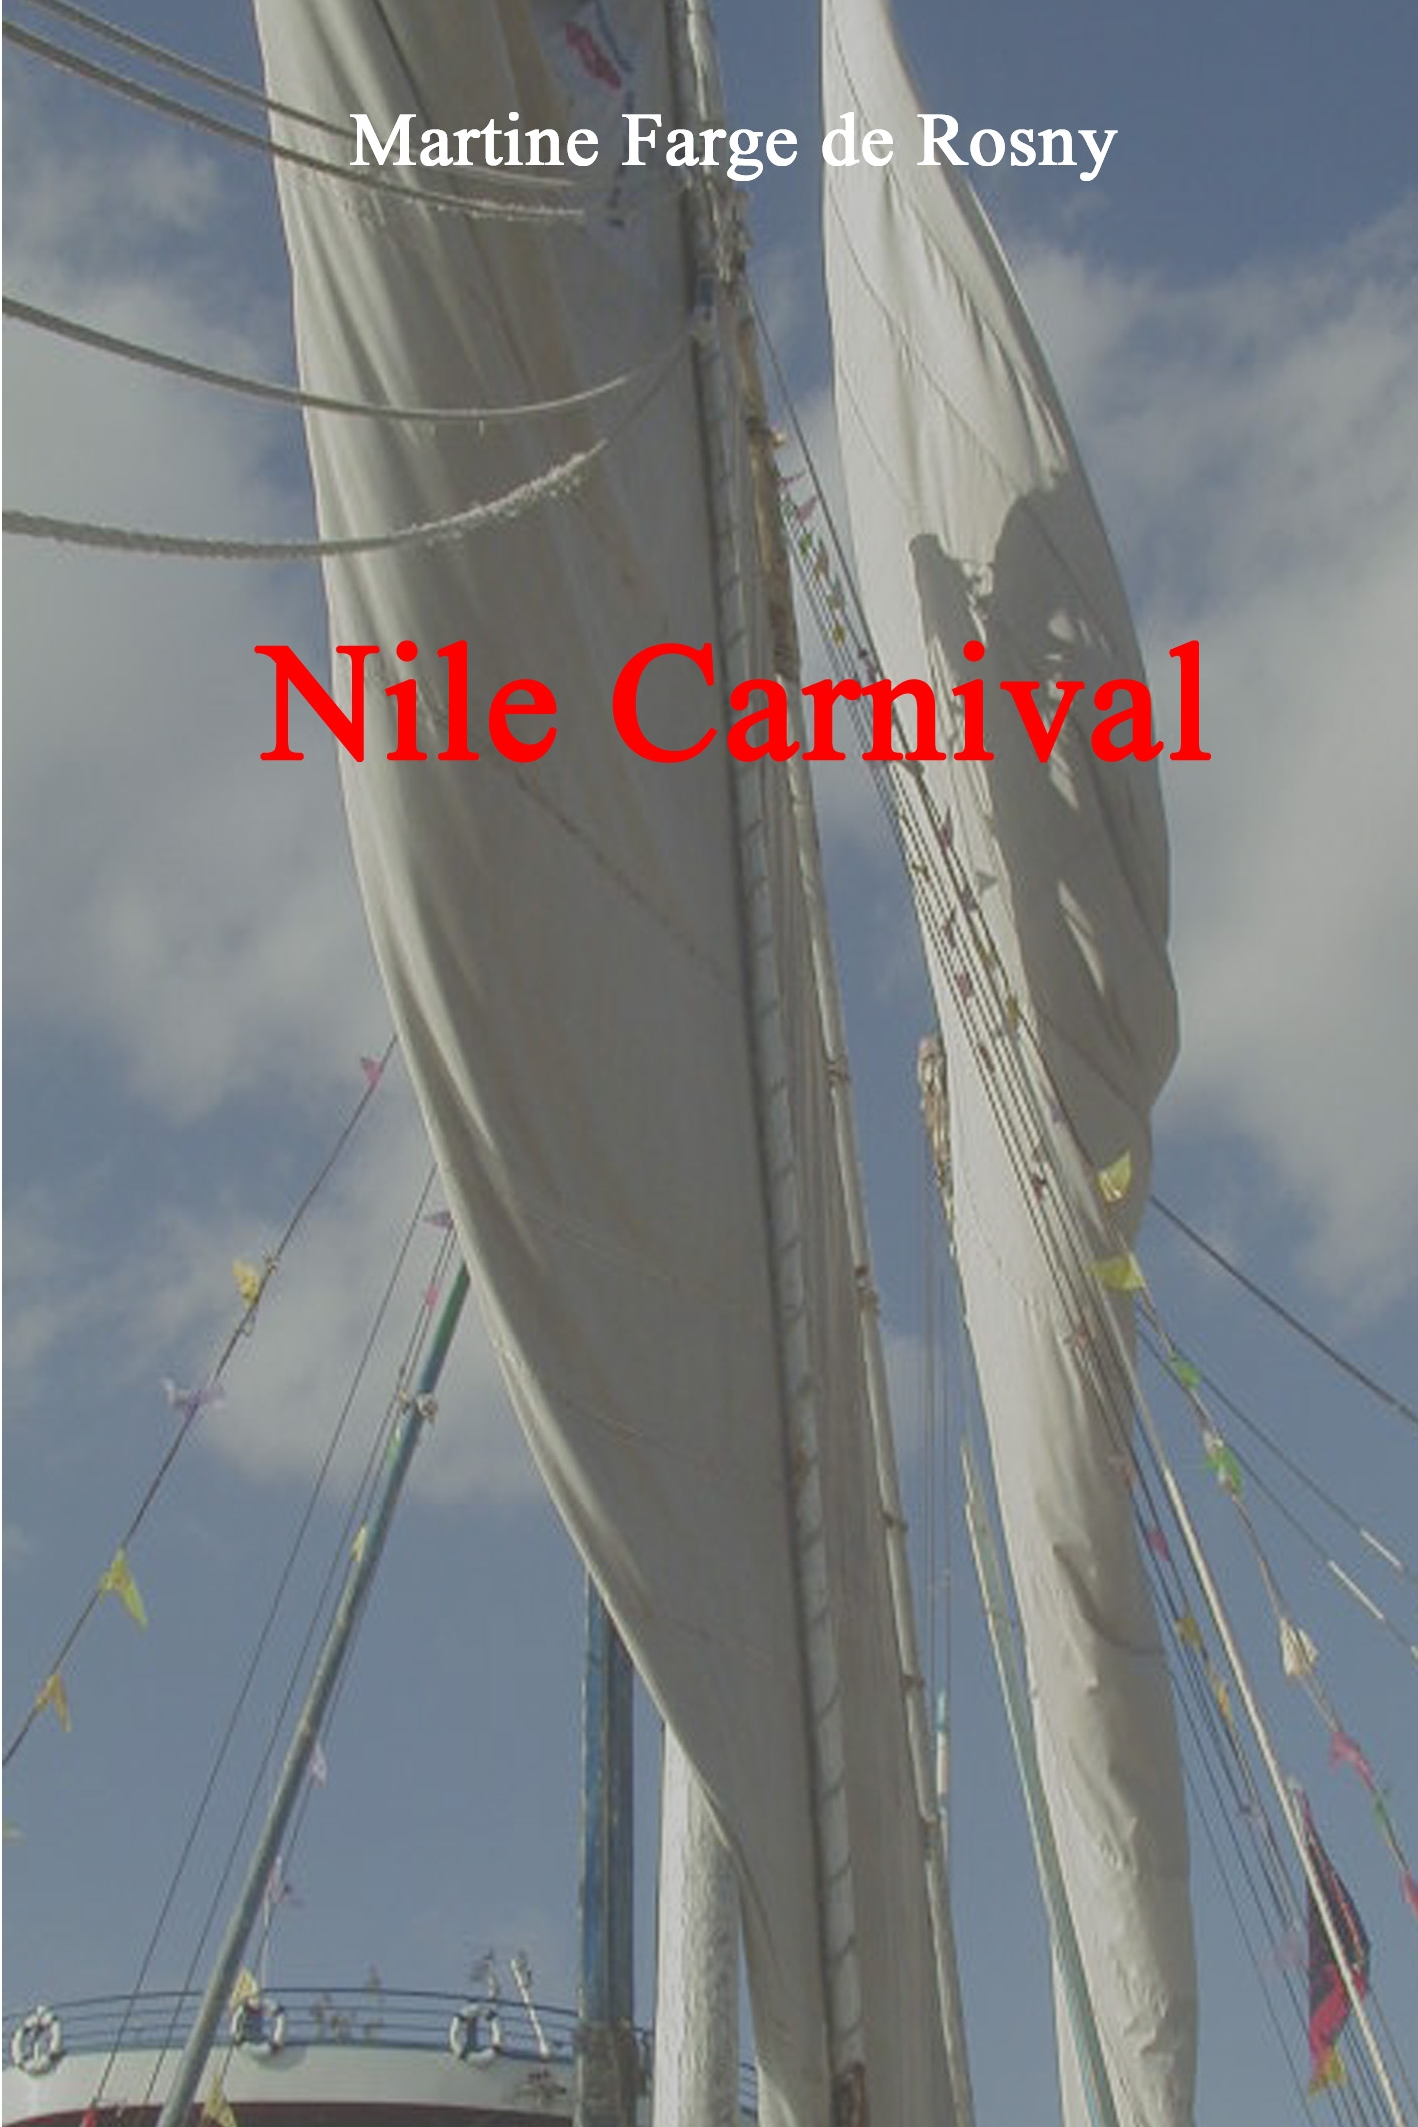 Nile Carnival